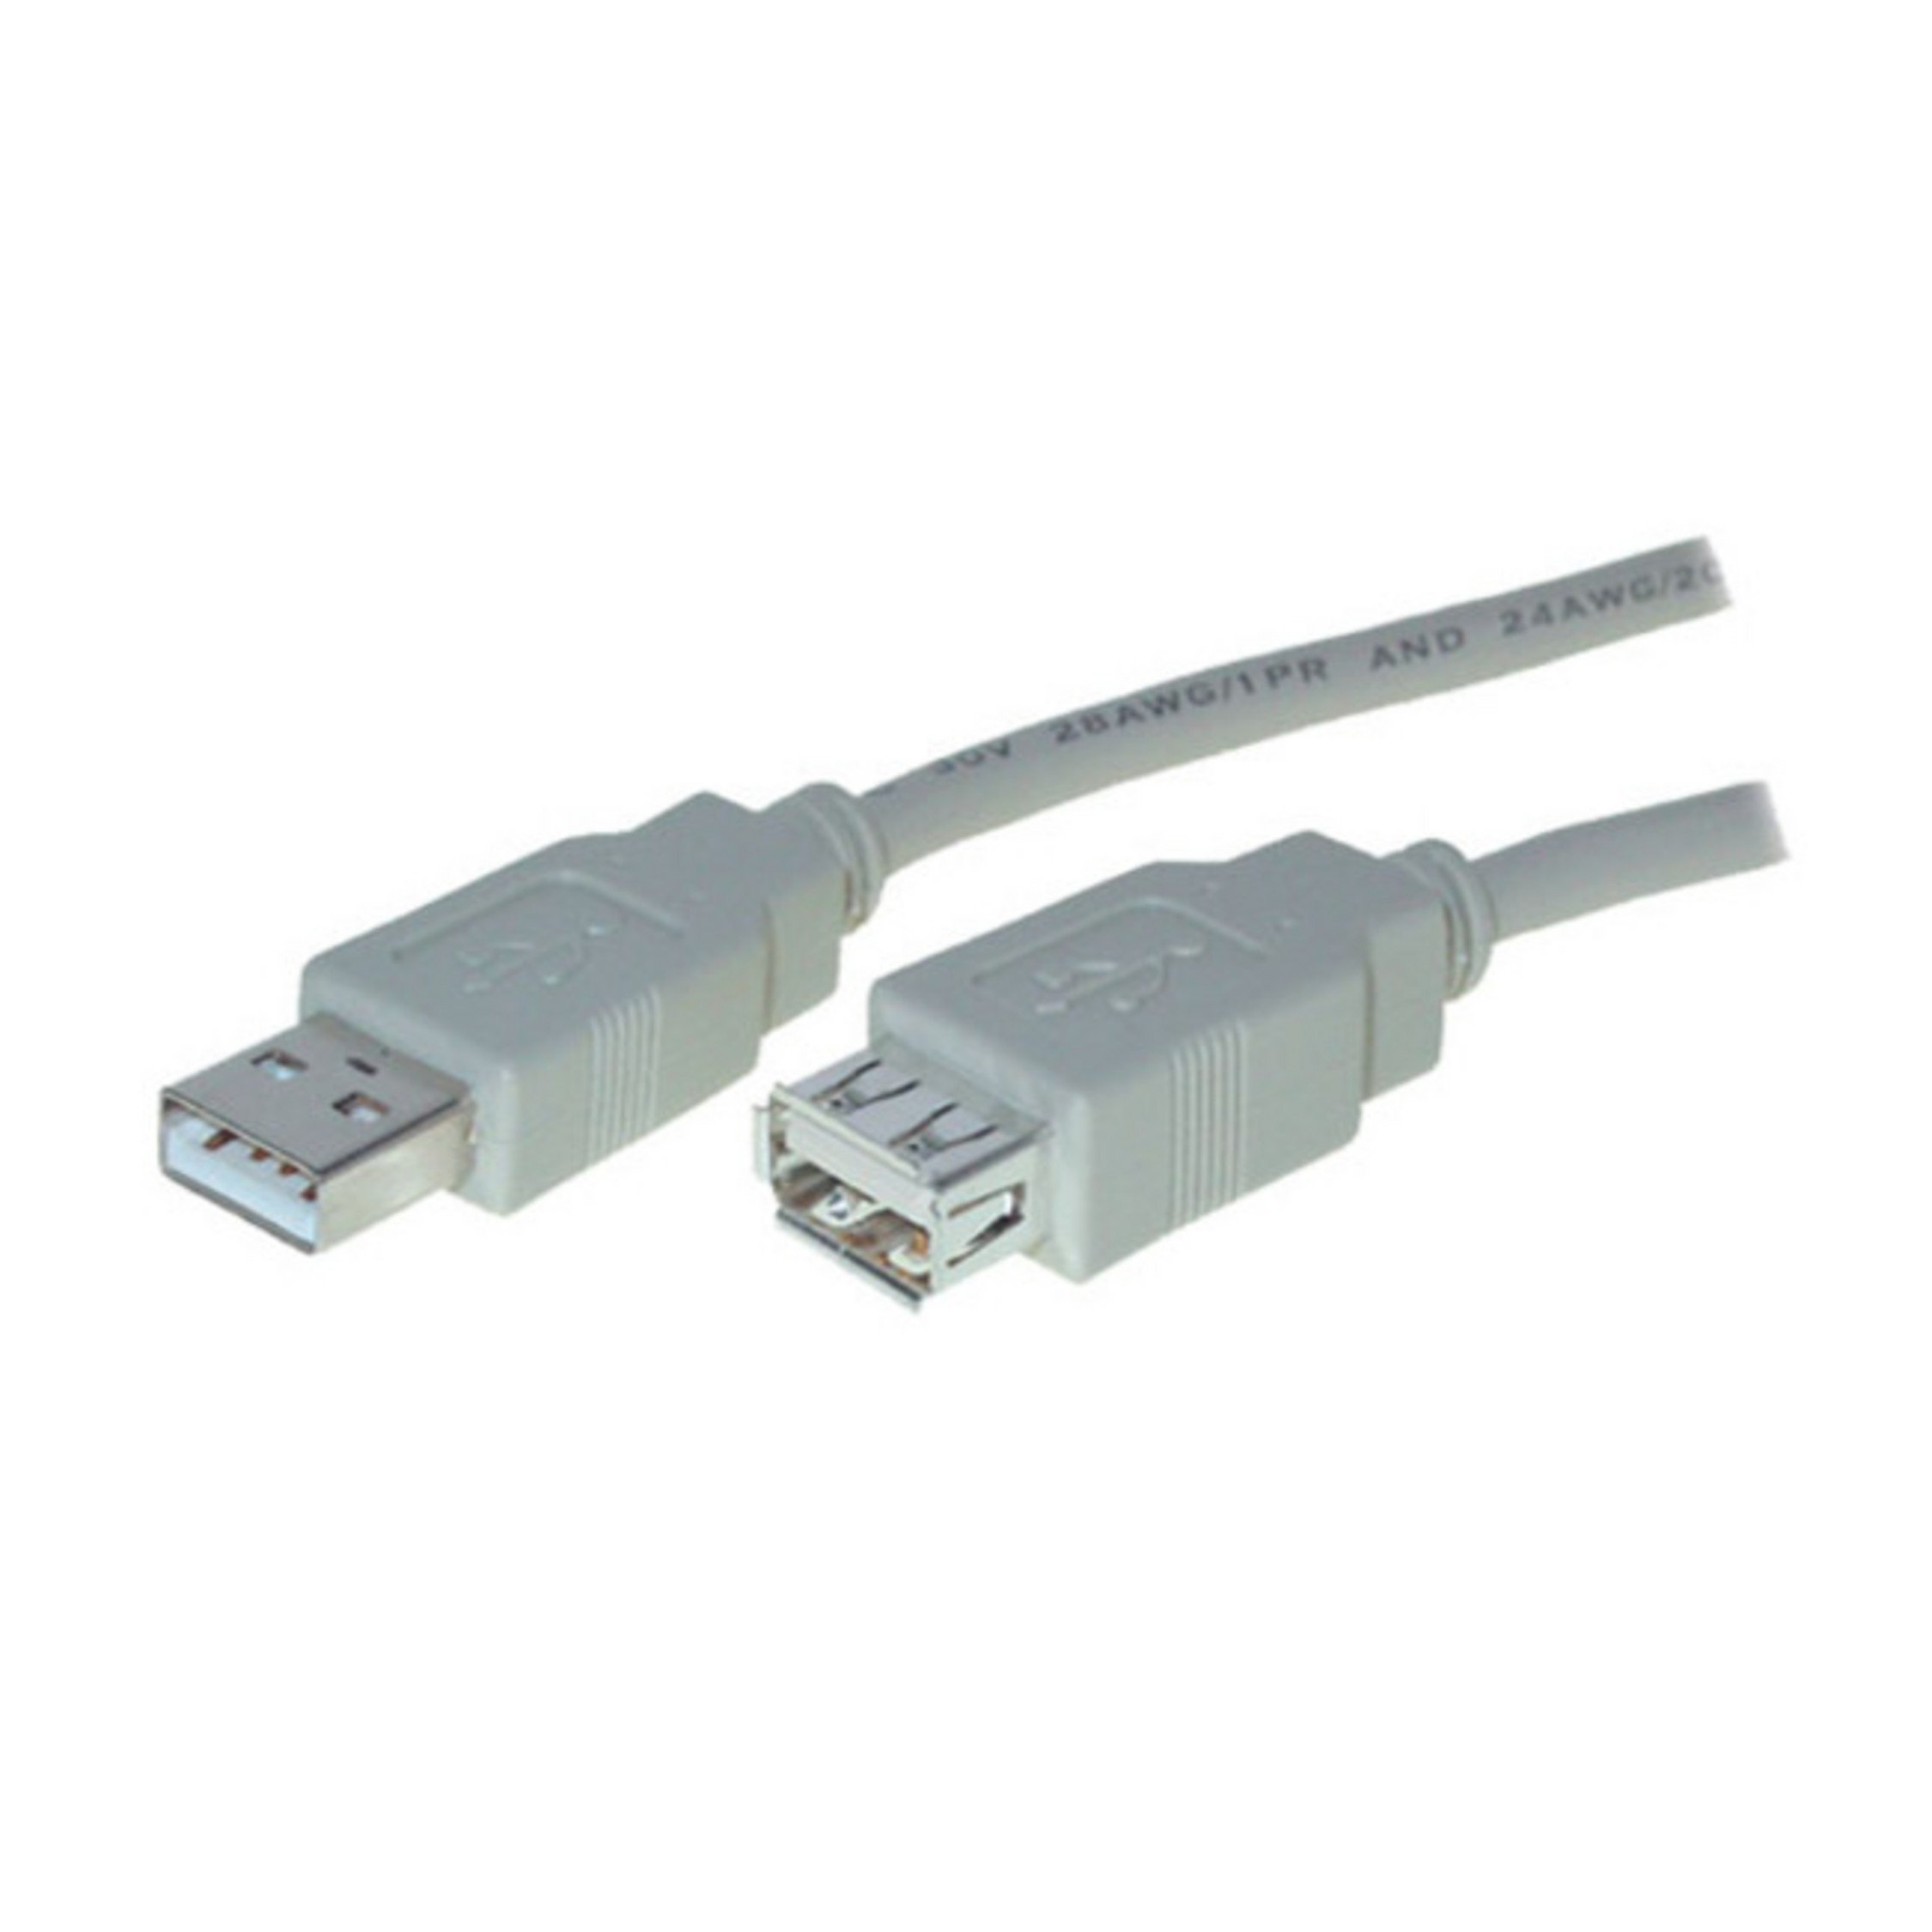 S/CONN MAXIMUM CONNECTIVITY USB USB A Buchse 2.0, Verlängerung A USB High Kabel Stecker Speed 3m 